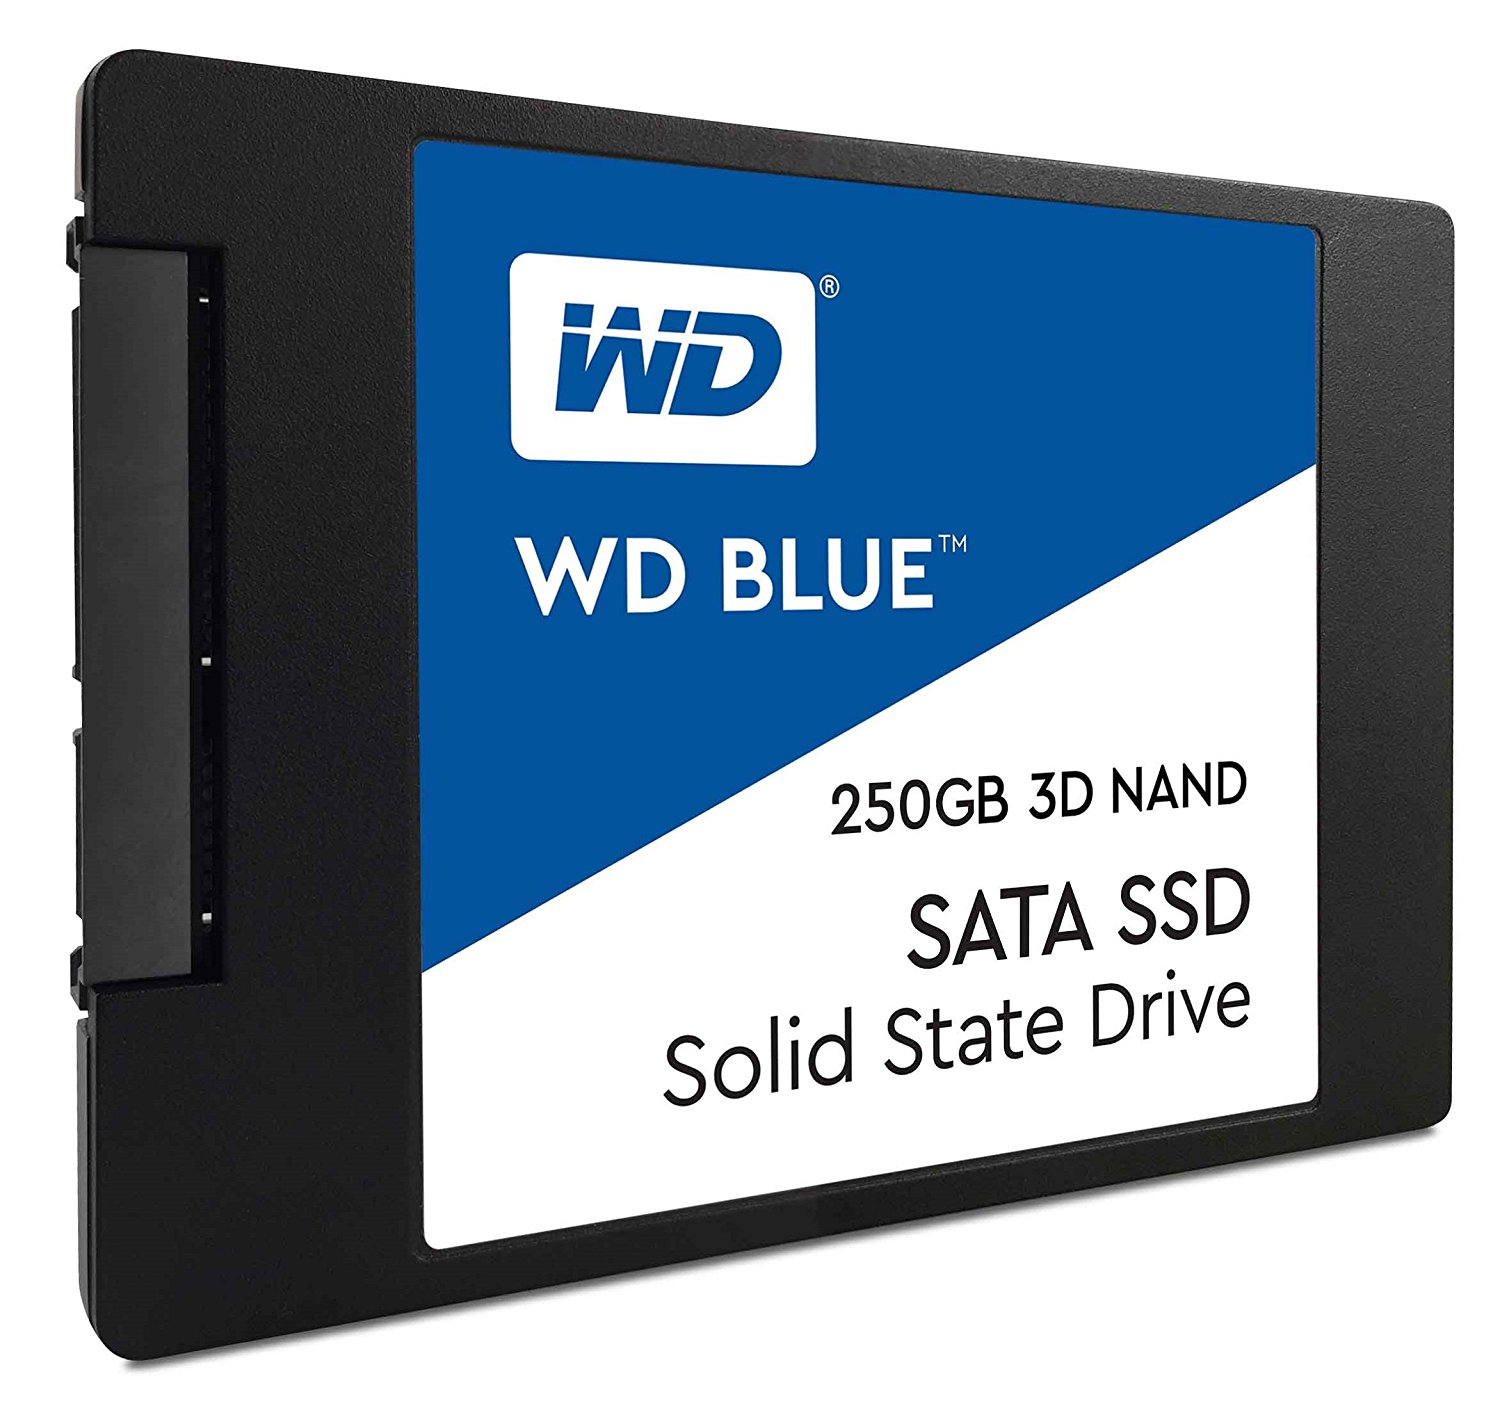 wd blue 500gb ssd - Wd Wd Blue 250GB 3D Nand Sata Ssd Solid State Drive